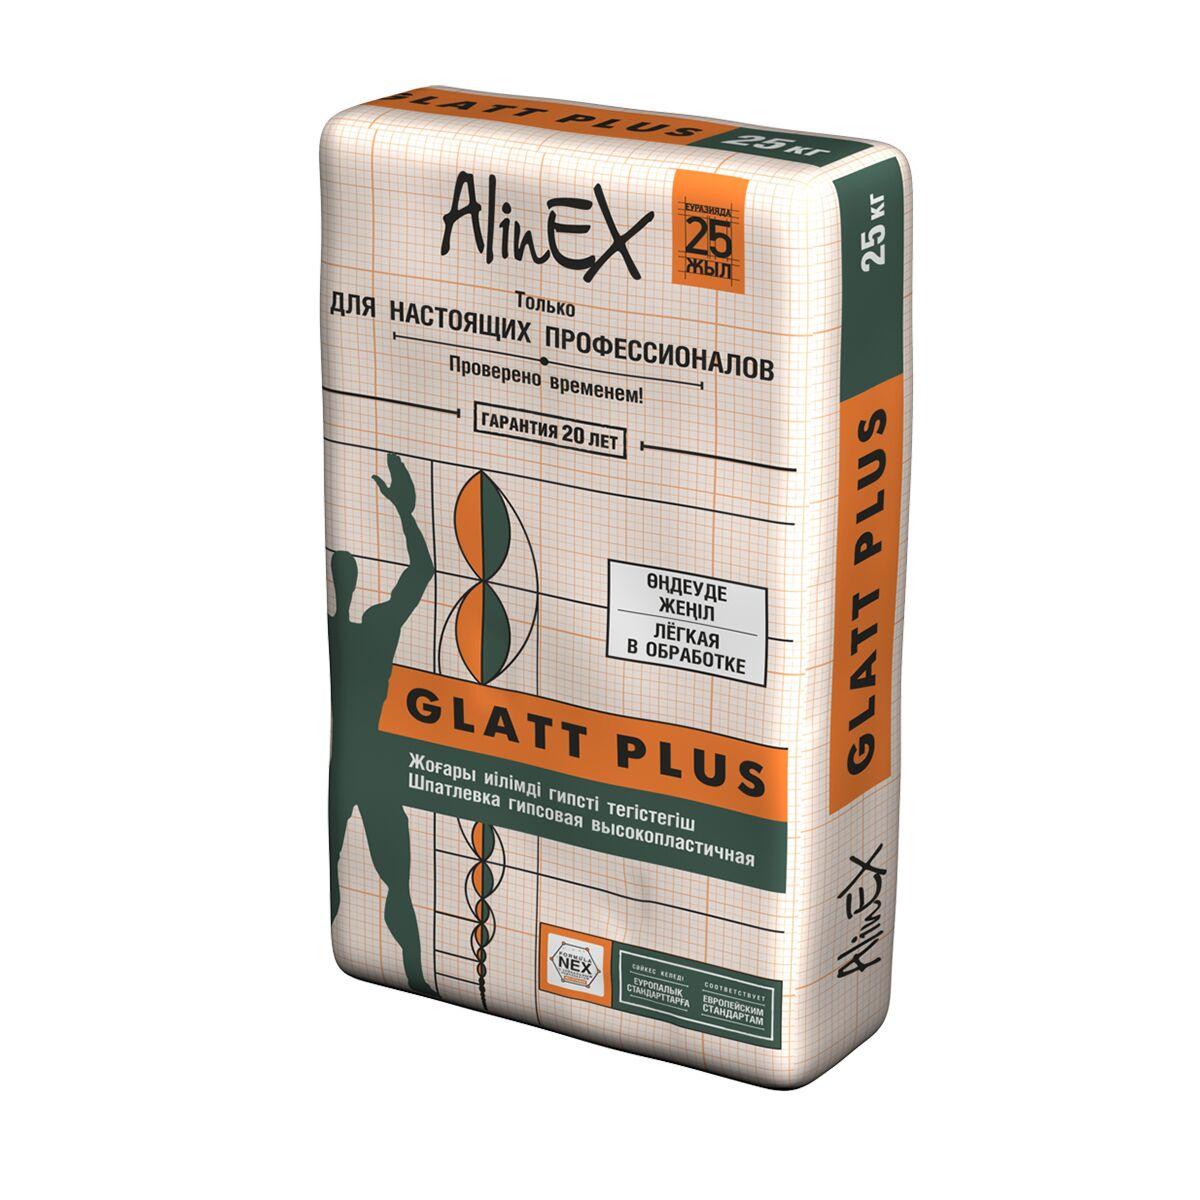 Шпатлевка черновая Глатт плюс (Alinex) 25 кг